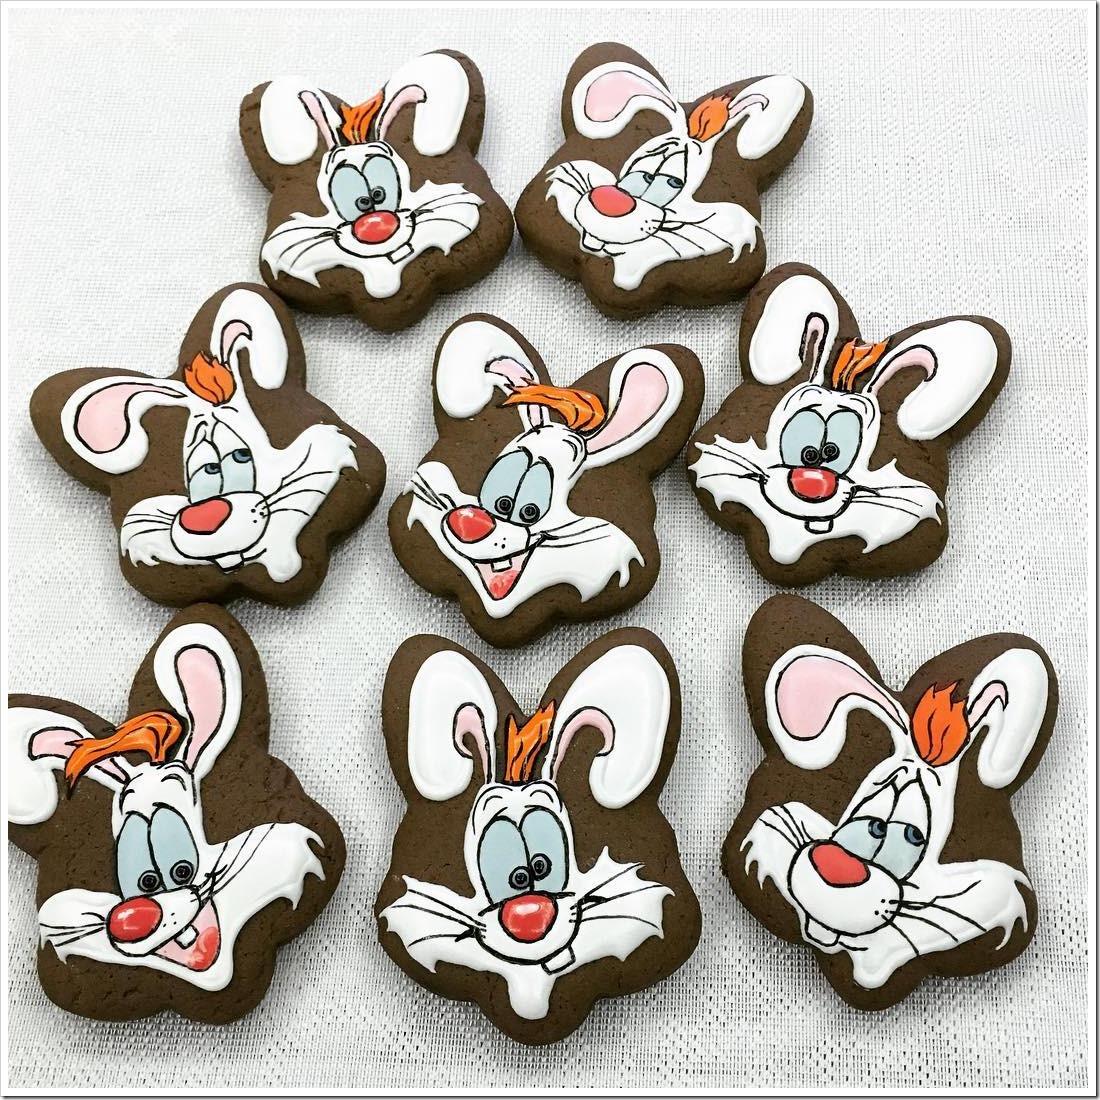 Roger Rabbit Cookies